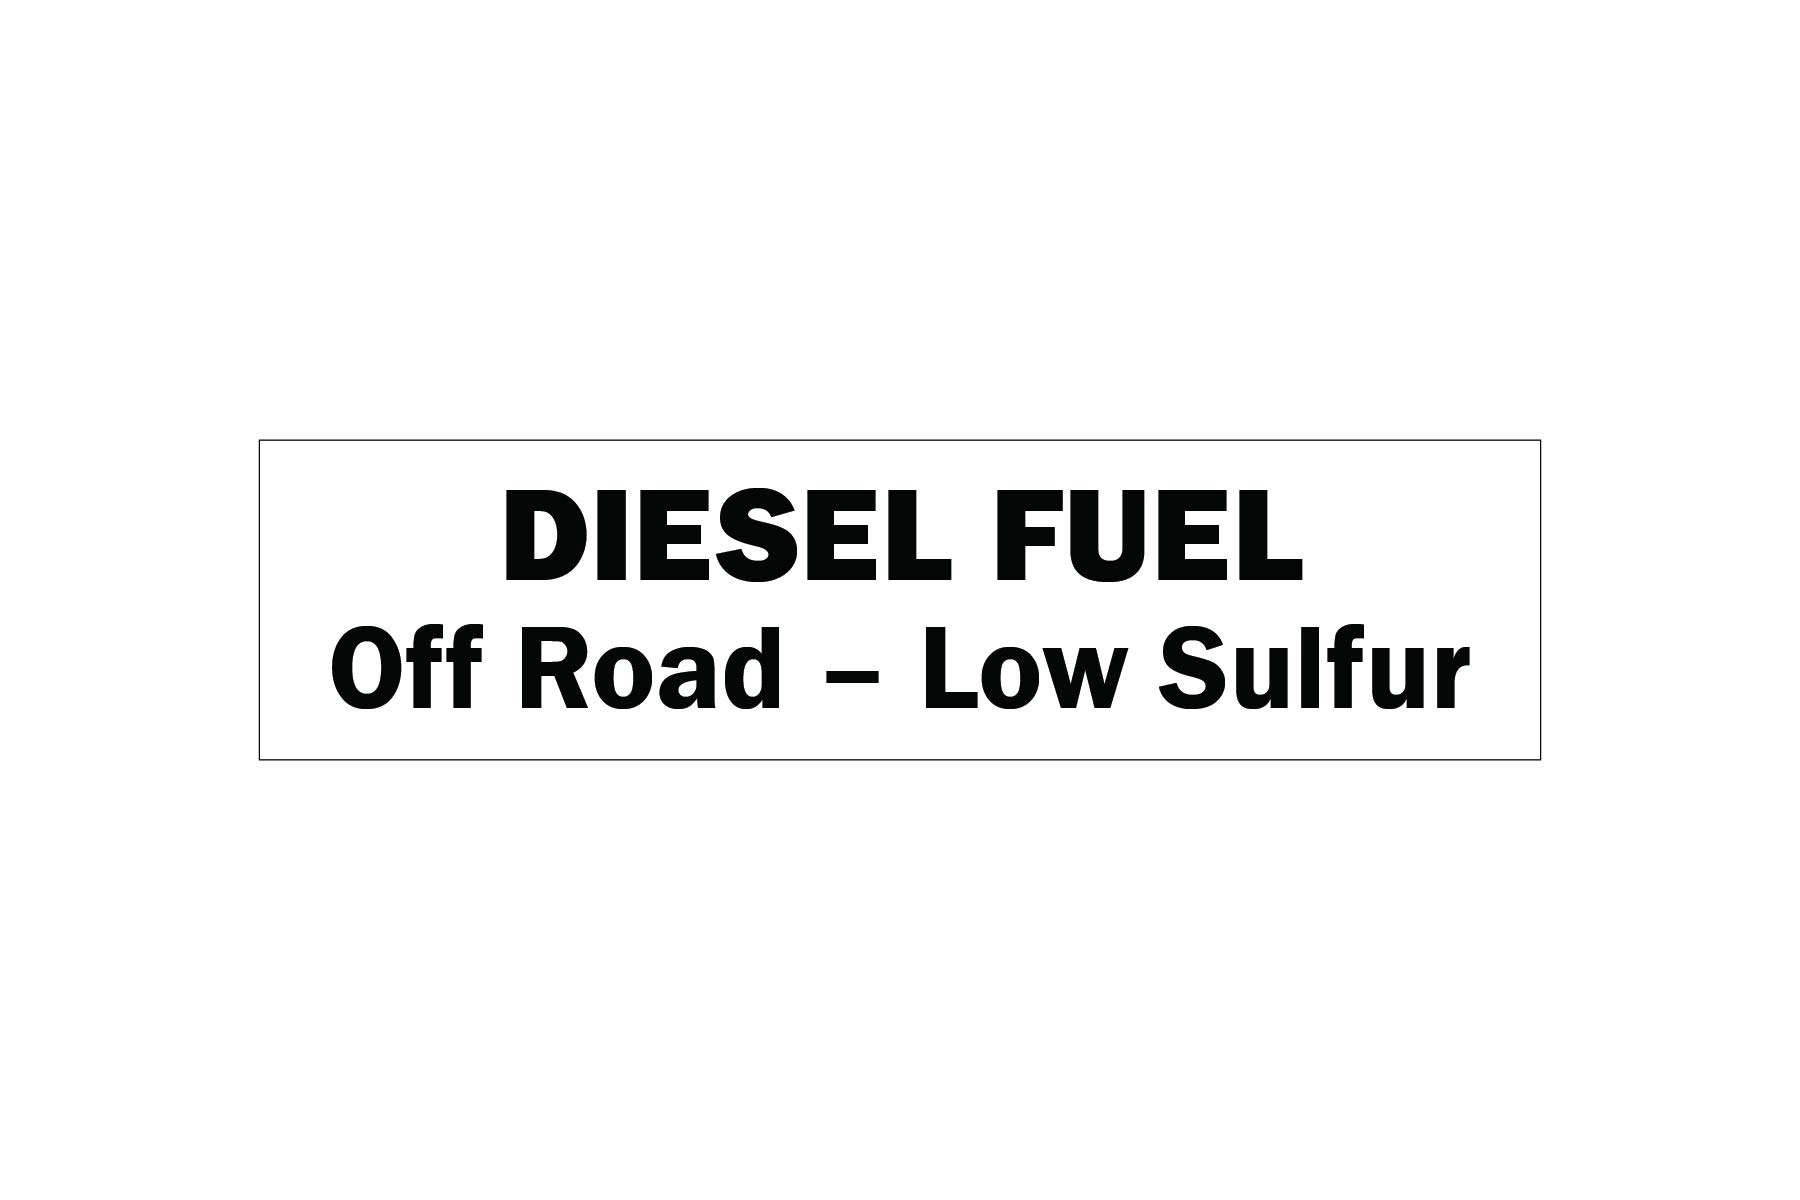 diesel-fuel-off-road-low-sulfur-decal